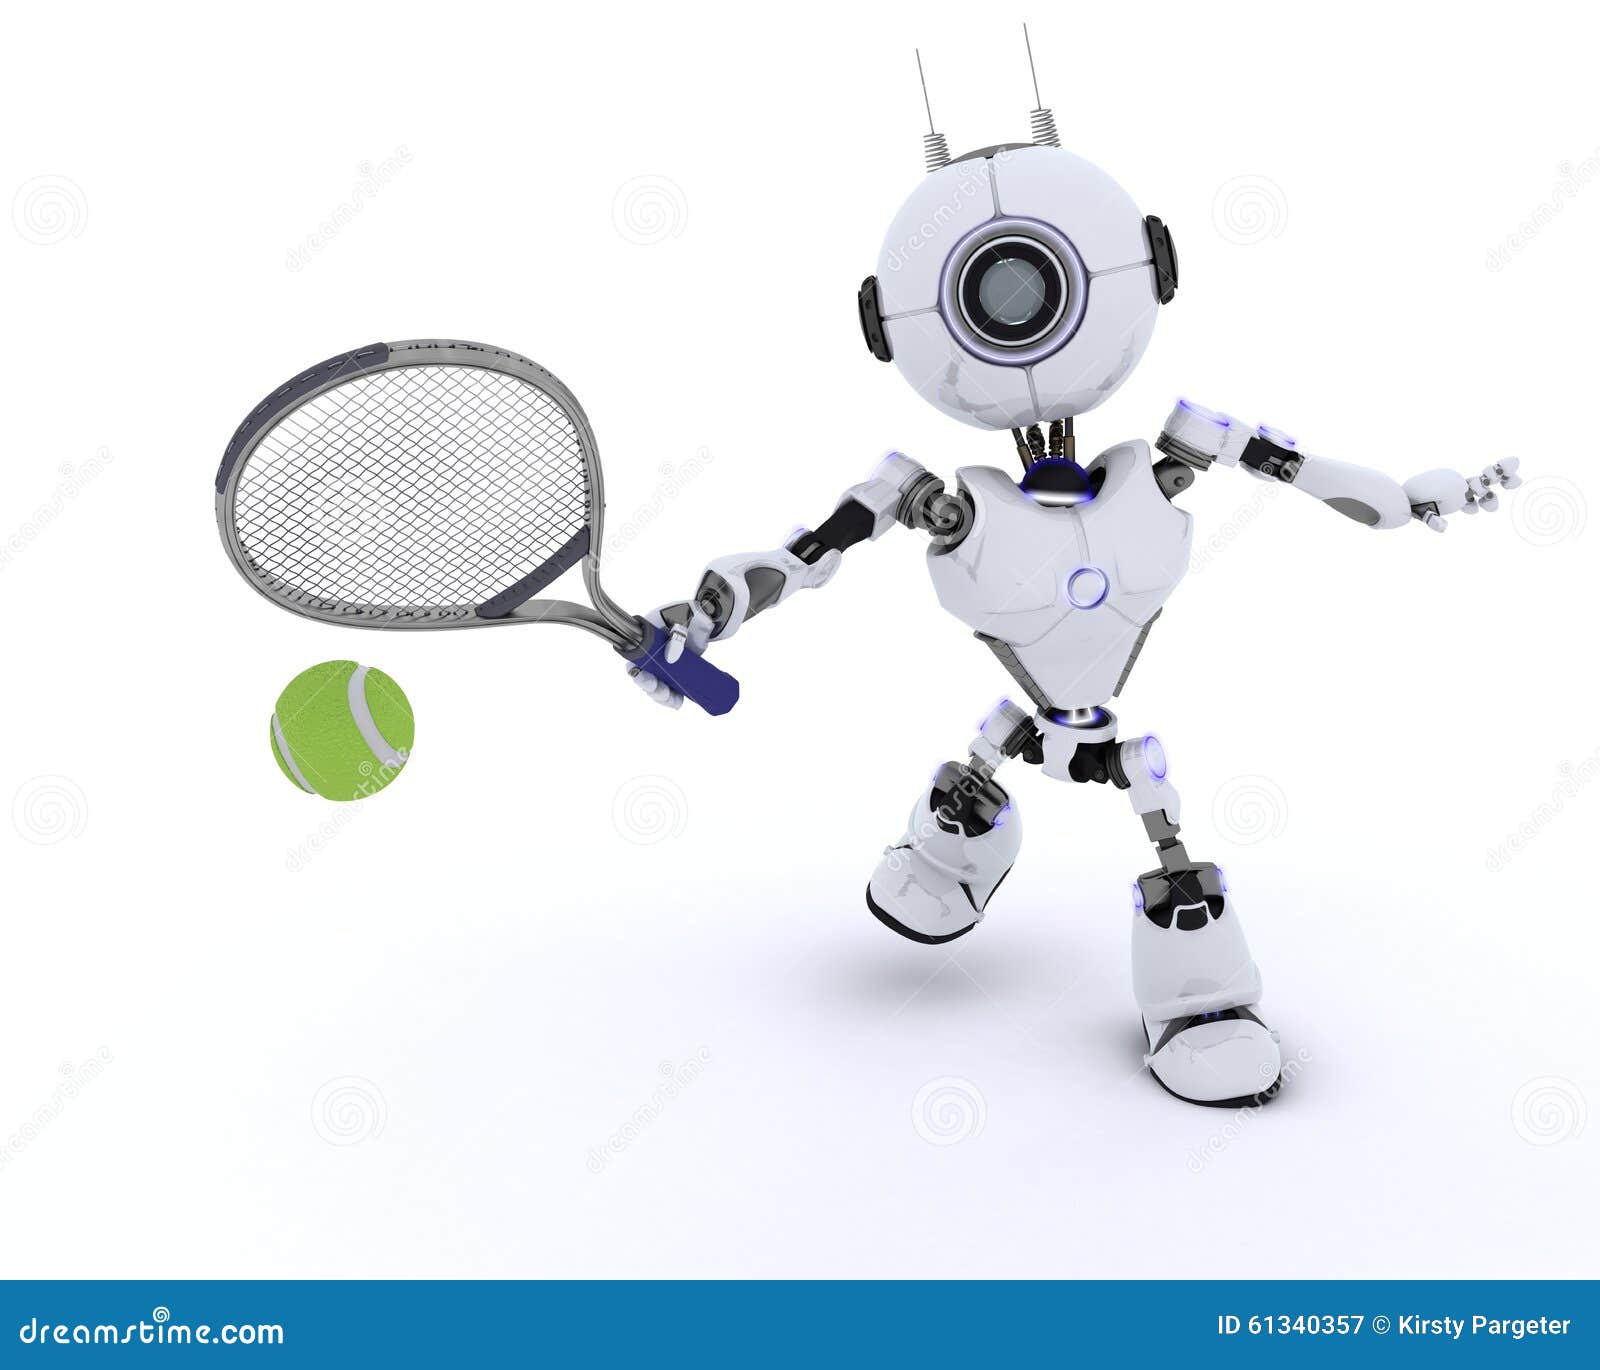 Робот играющий в настольный теннис. Теннисный робот. Робот теннисист. Теннисный робот для большого тенниса. Робот для игры в теннис.